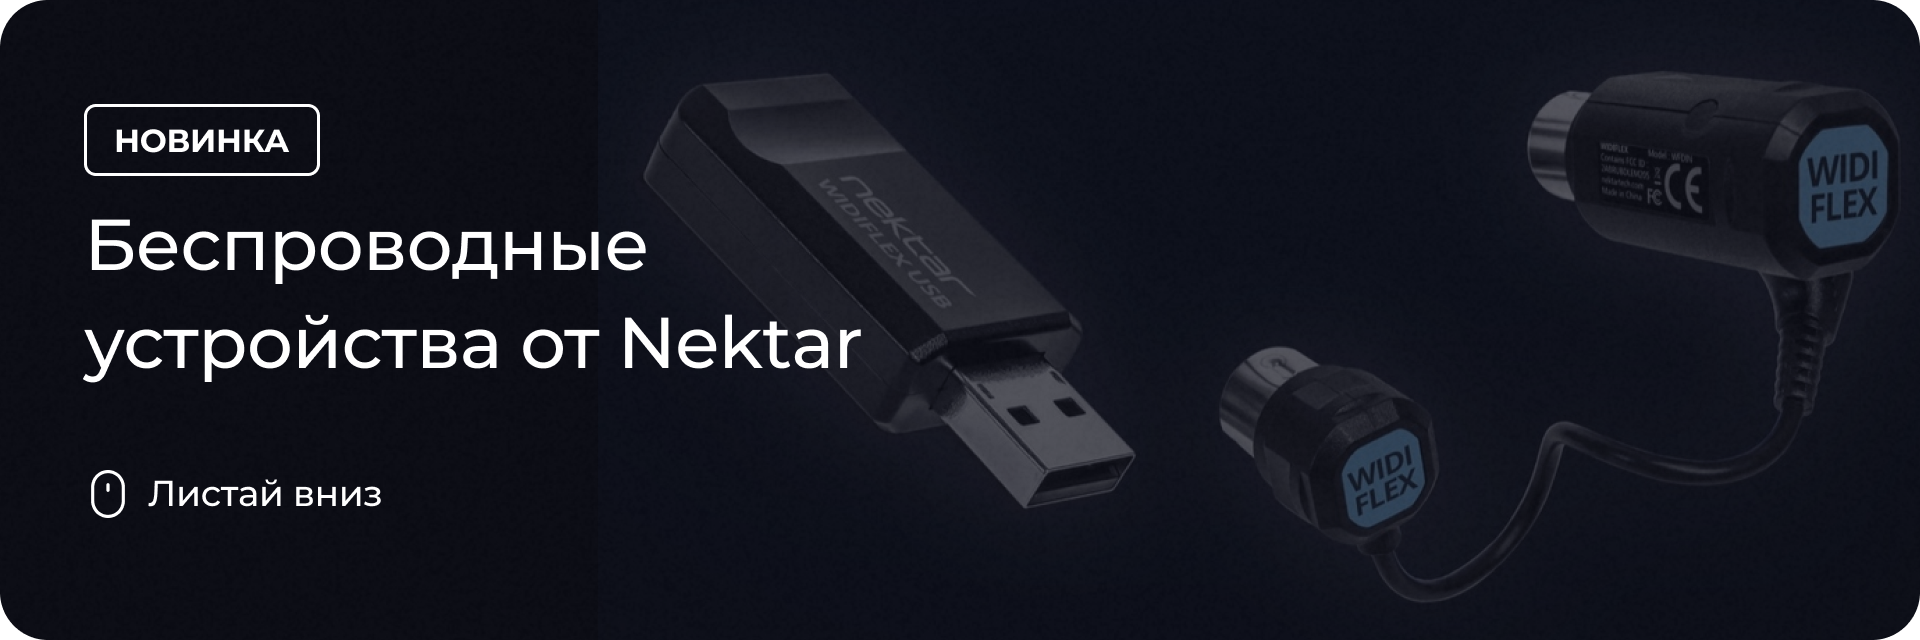 Беспроводные устройства от Nektar